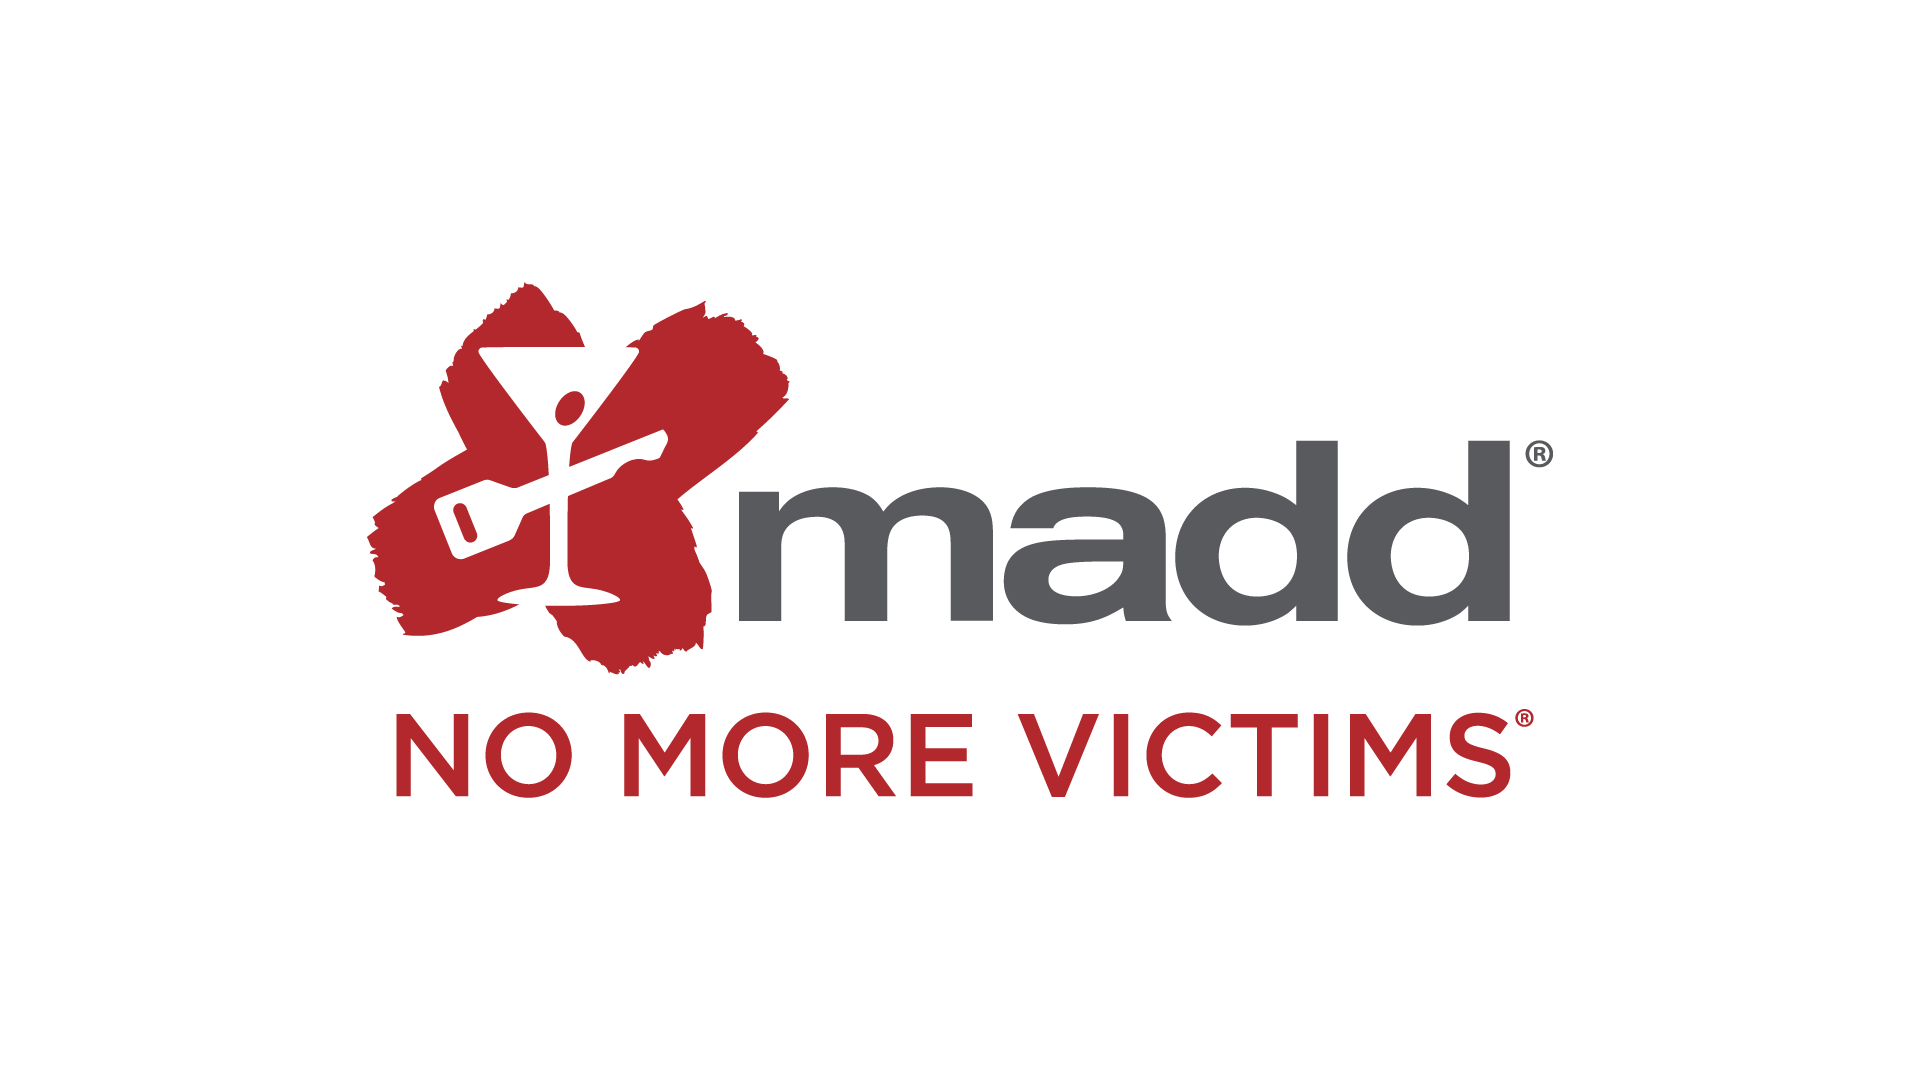 MADD no more victims